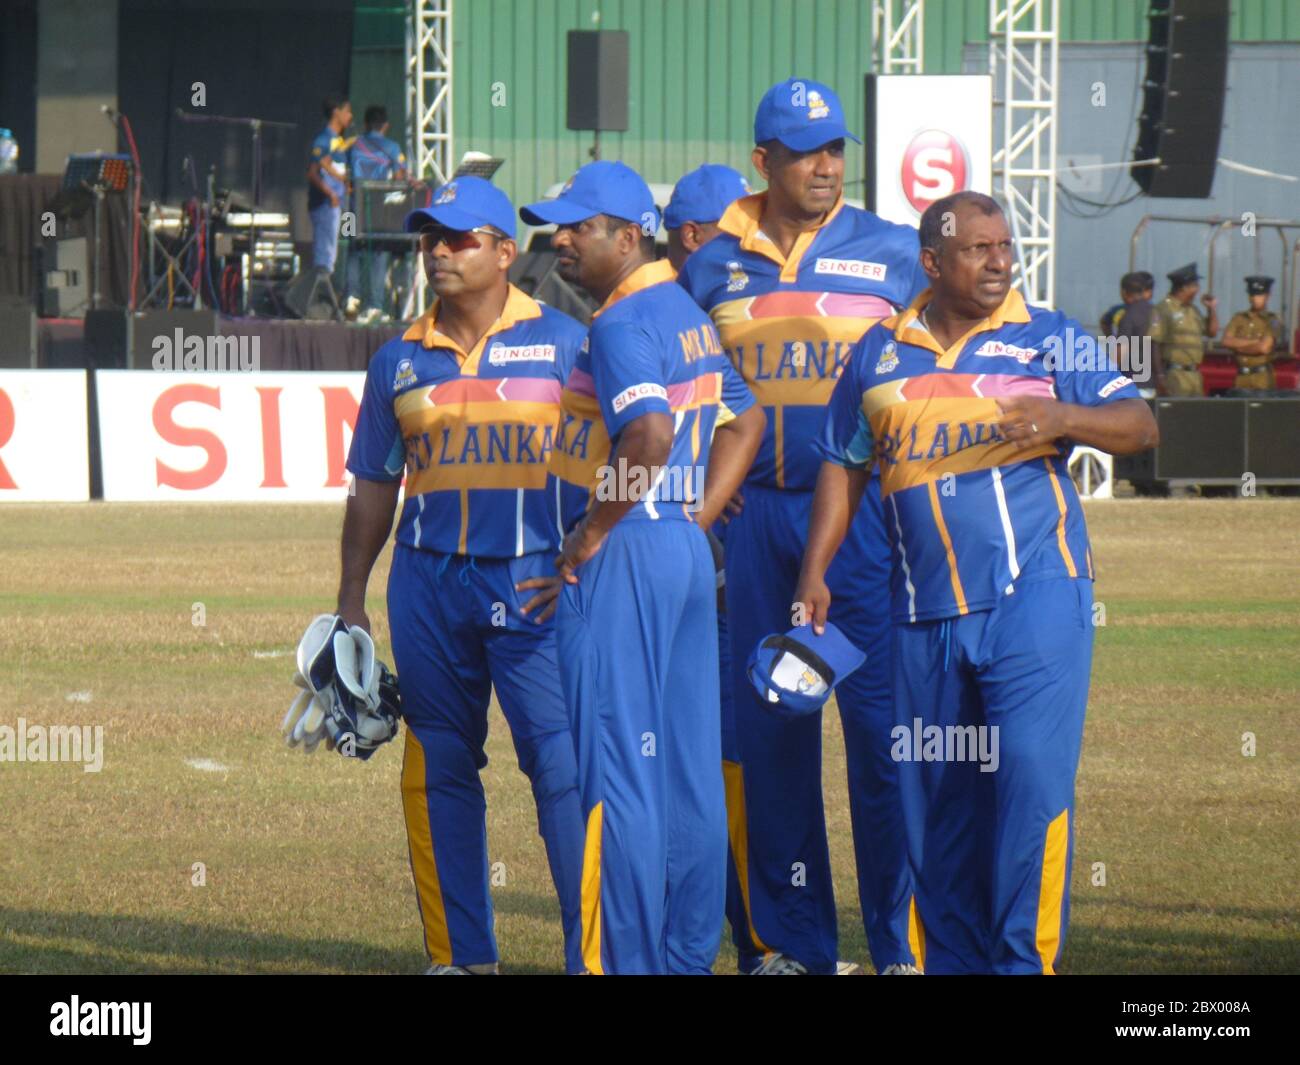 Anciens vainqueurs de la coupe du monde de cricket du Sri Lanka de 1996. Dans un match amical pour recueillir des fonds pour les joueurs de cricket moins chanceux. De gauche à droite, Romesh Kaluwitharana, Muttiah Muralitharan, Promodya Wickramasignhe et Aravinda de Silva. Banque D'Images